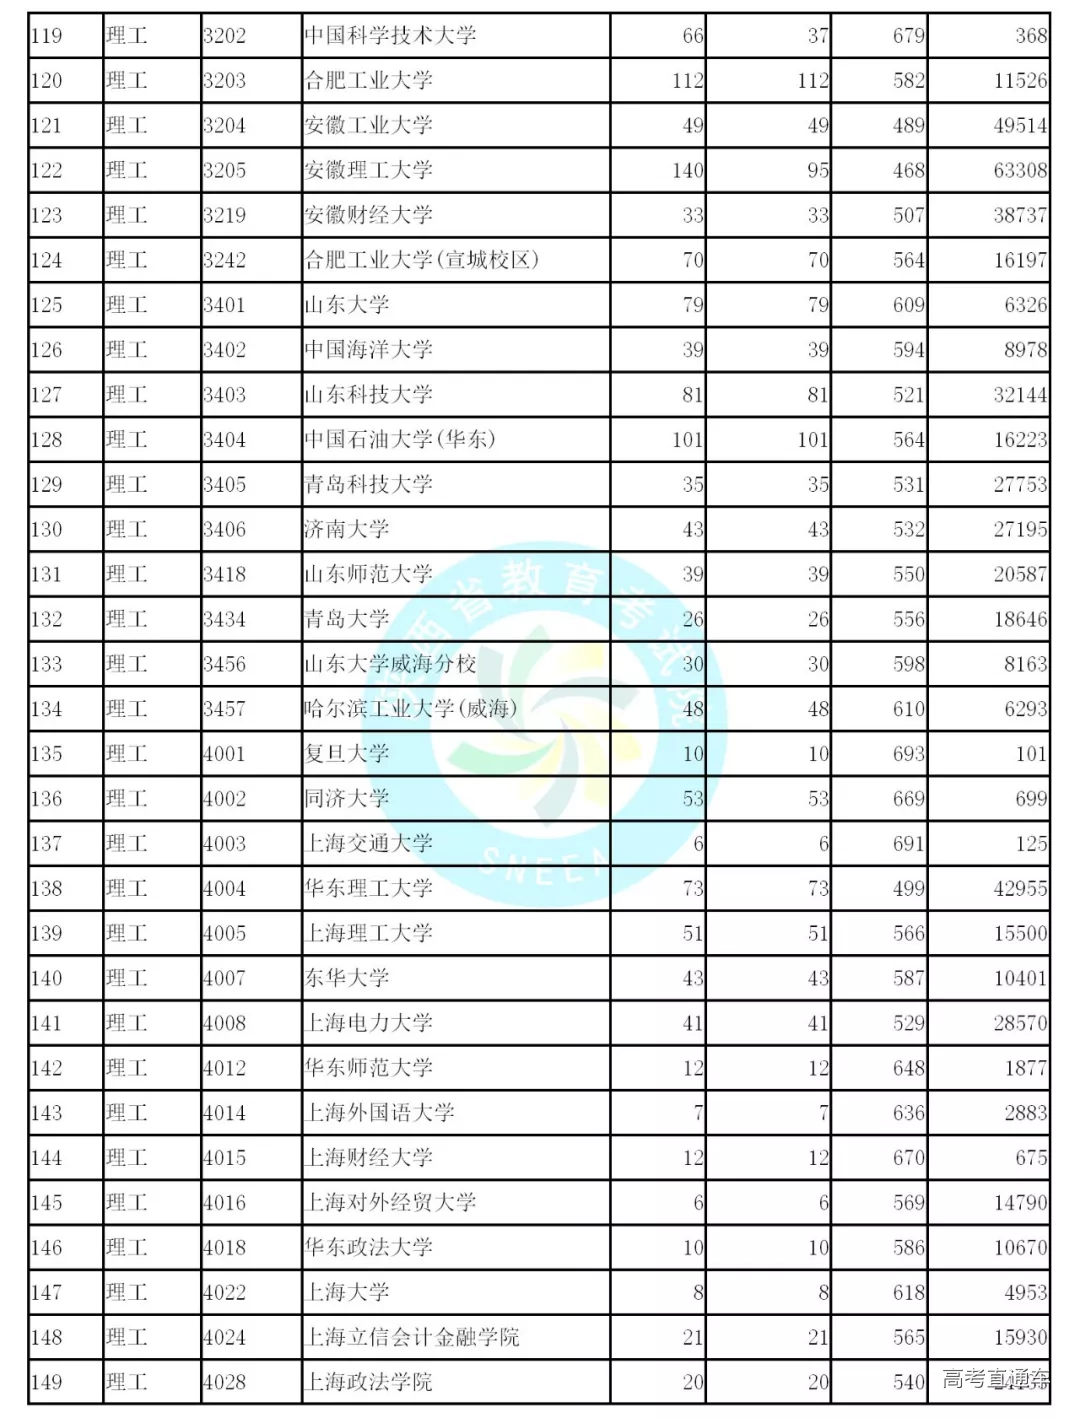 2019年陕西省高考本科一批文史类、理工类正式投档线统计表公布